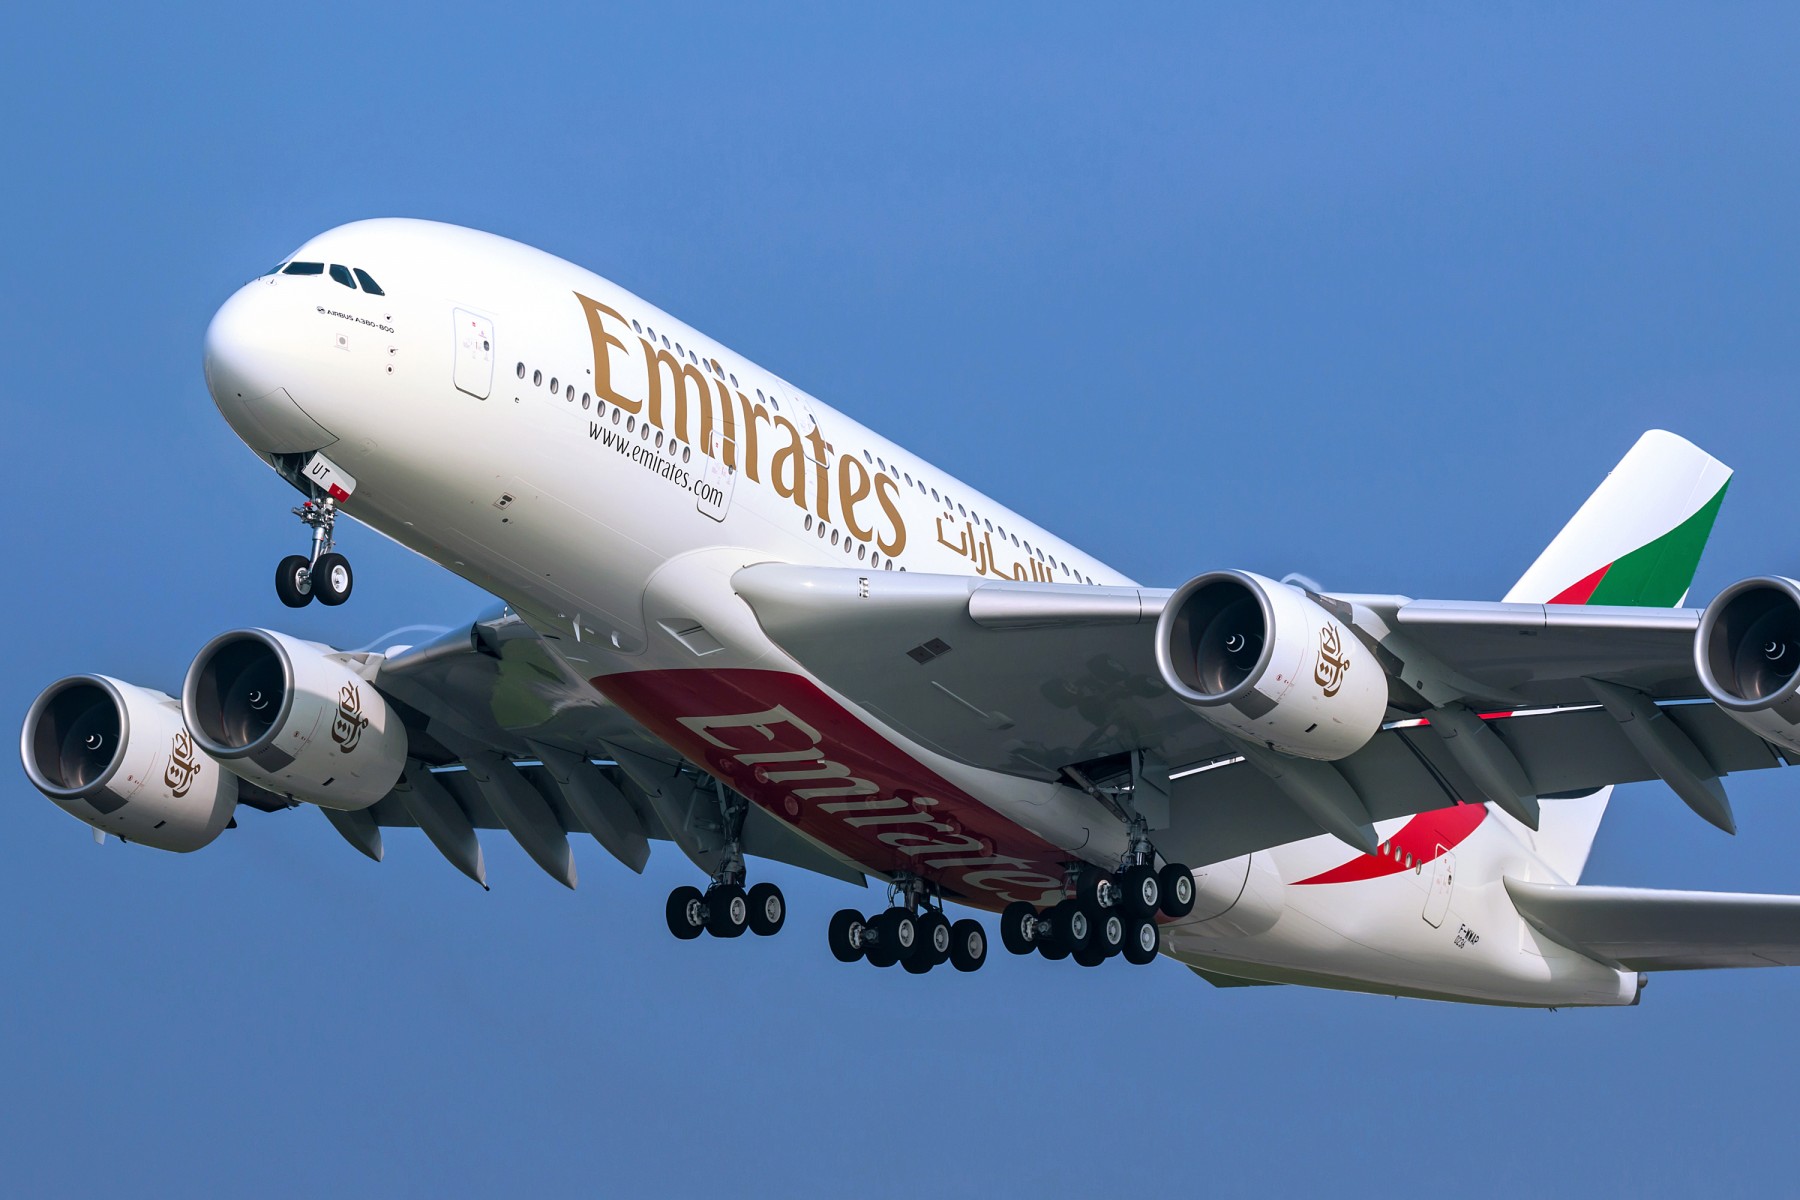 Emirates programme trois vols spéciaux au départ du Maroc